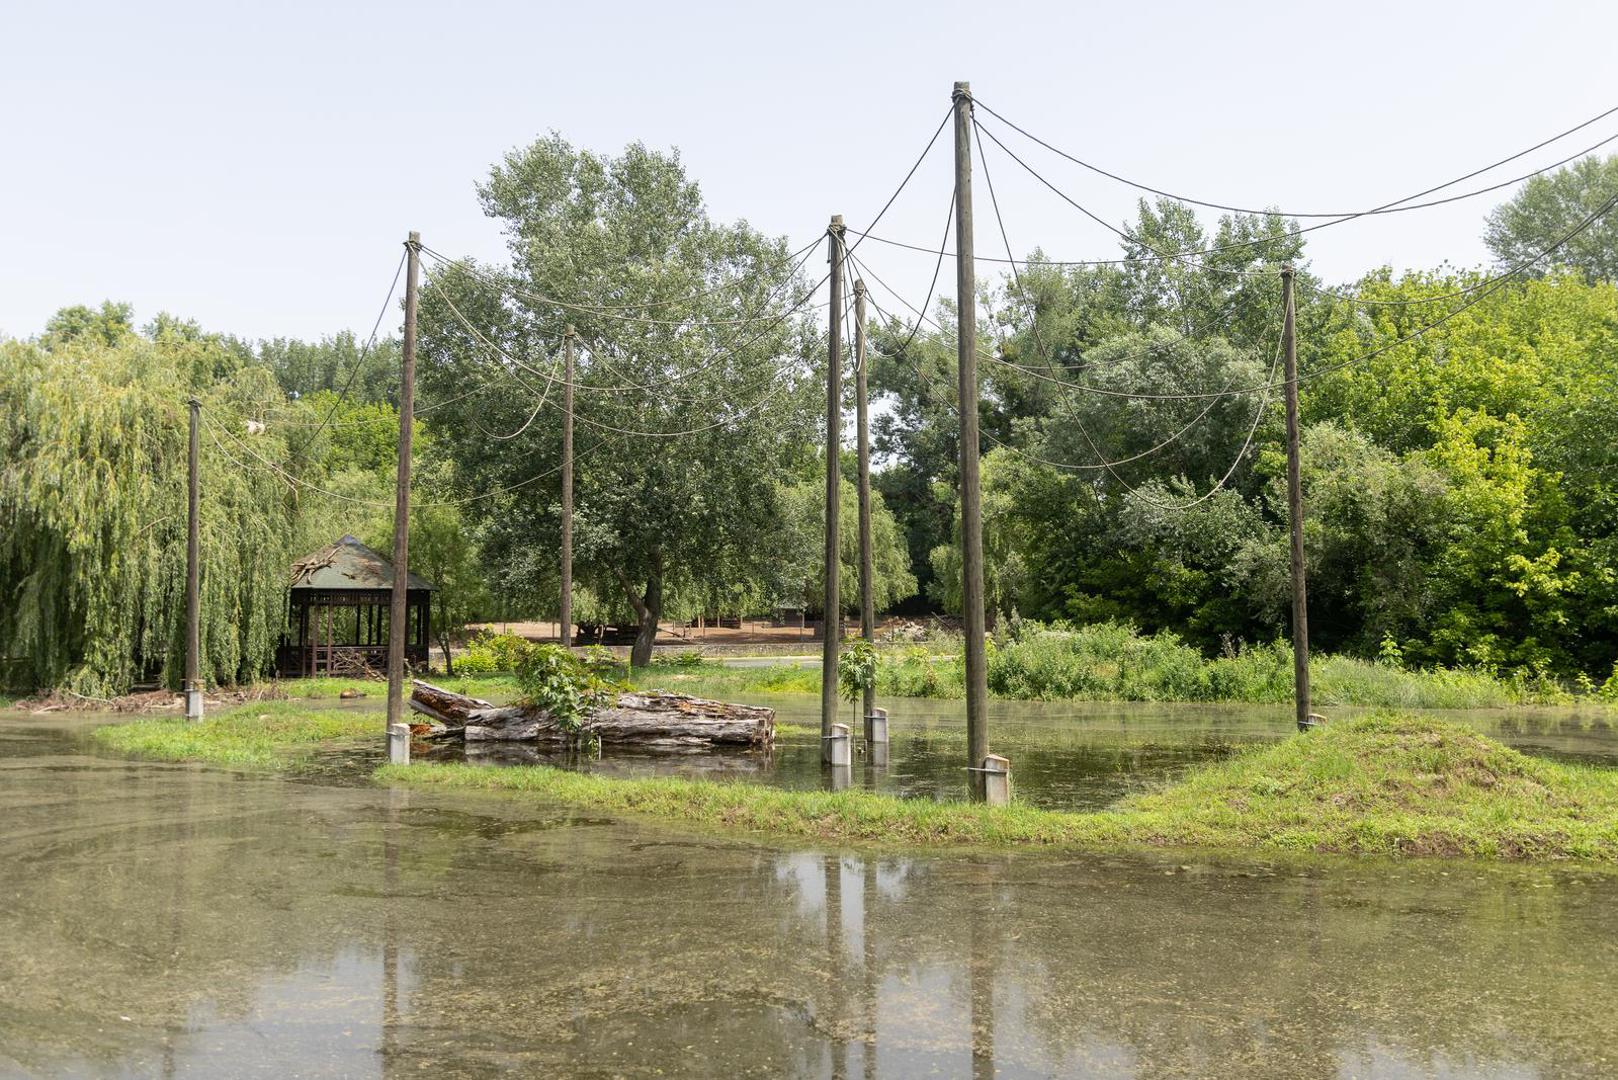 Poplavljeni dio vrta je ograđen i postavljen je novi privremeni putokaz za posjetitelje.